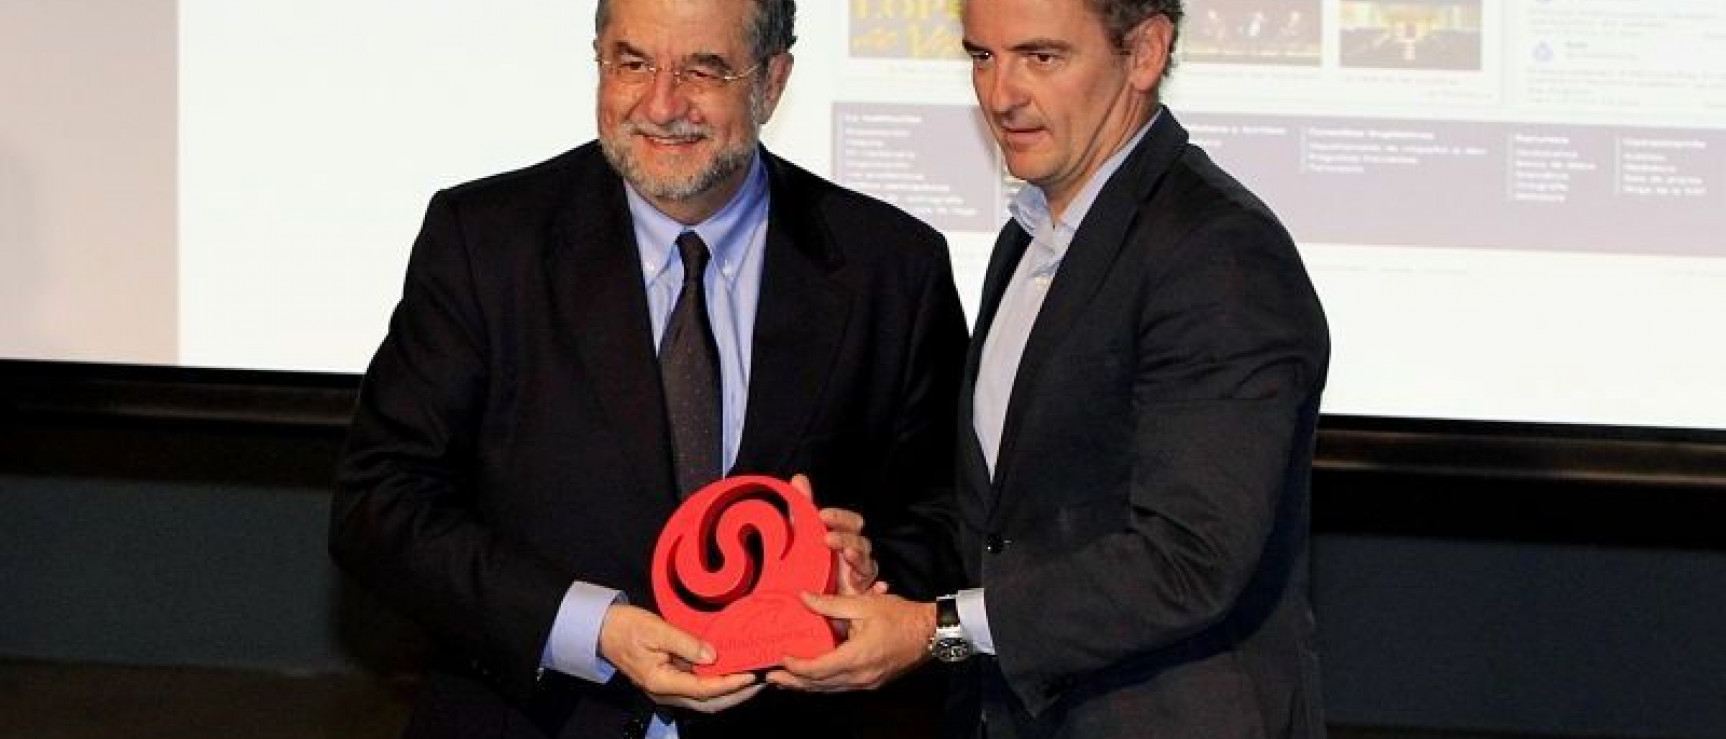 José Antonio Pascual (izquierda) recoge el premio en nombre de la corporación.